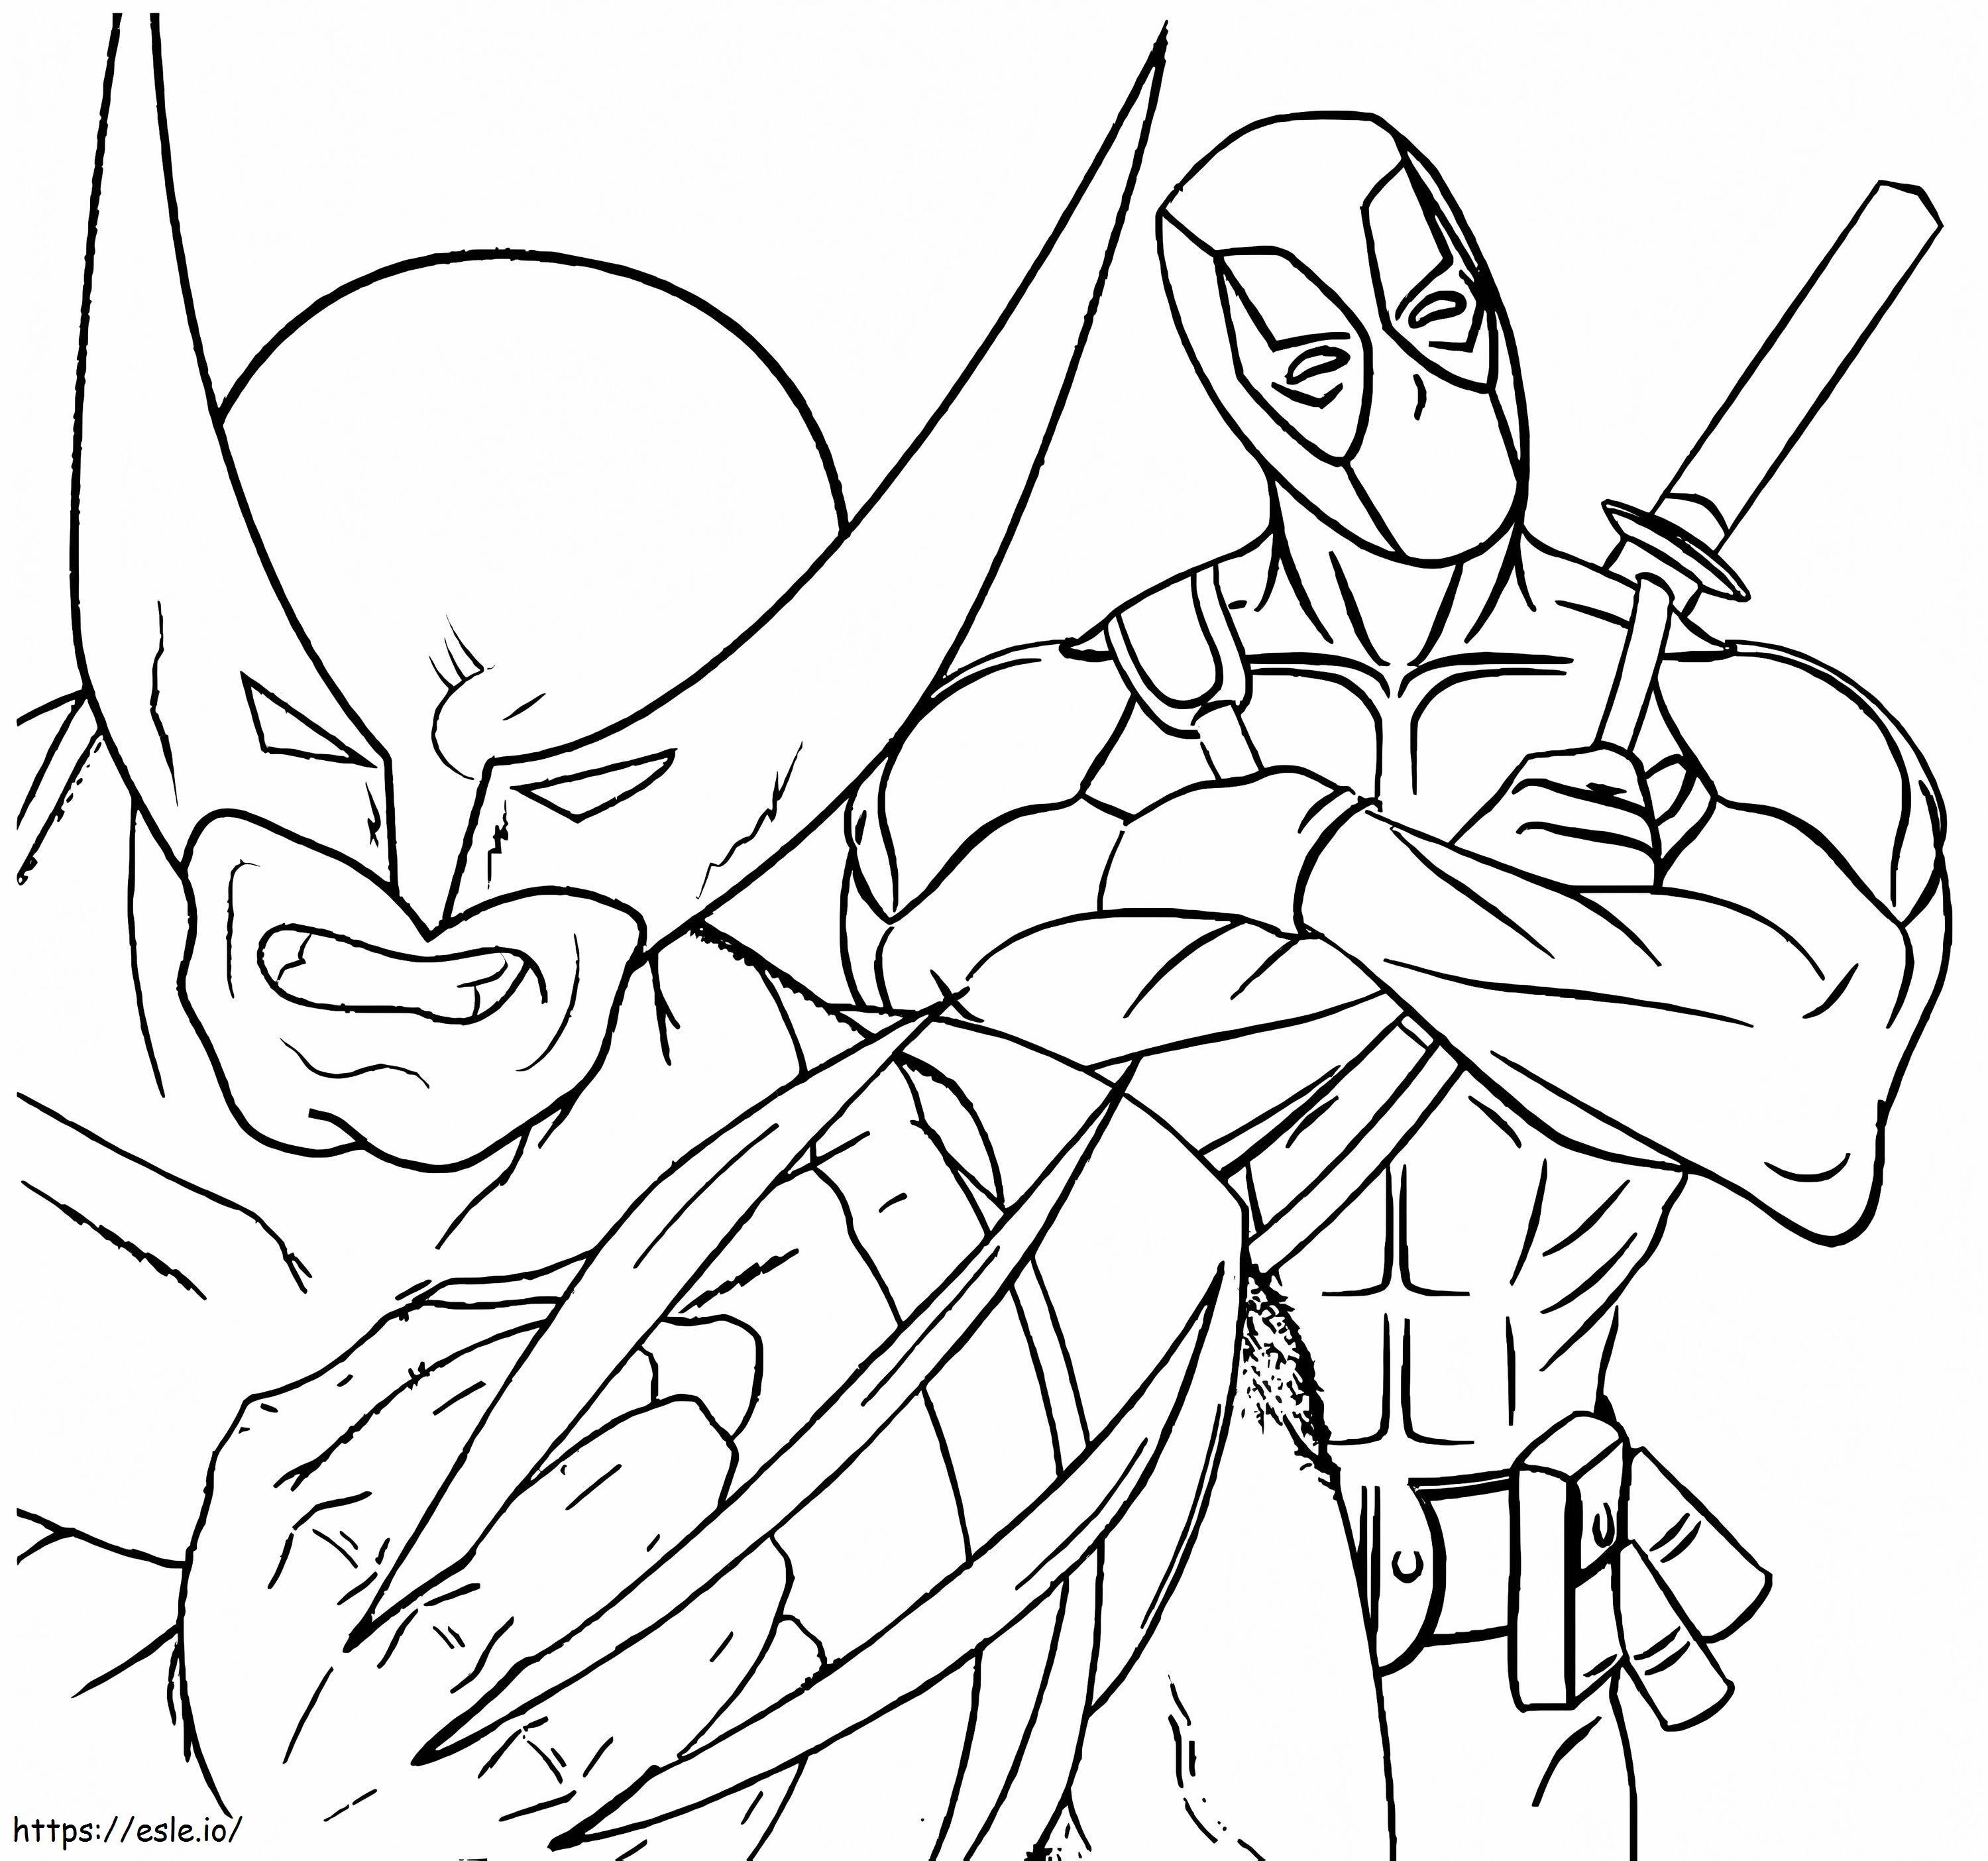 Deadpool ve Wolverine boyama